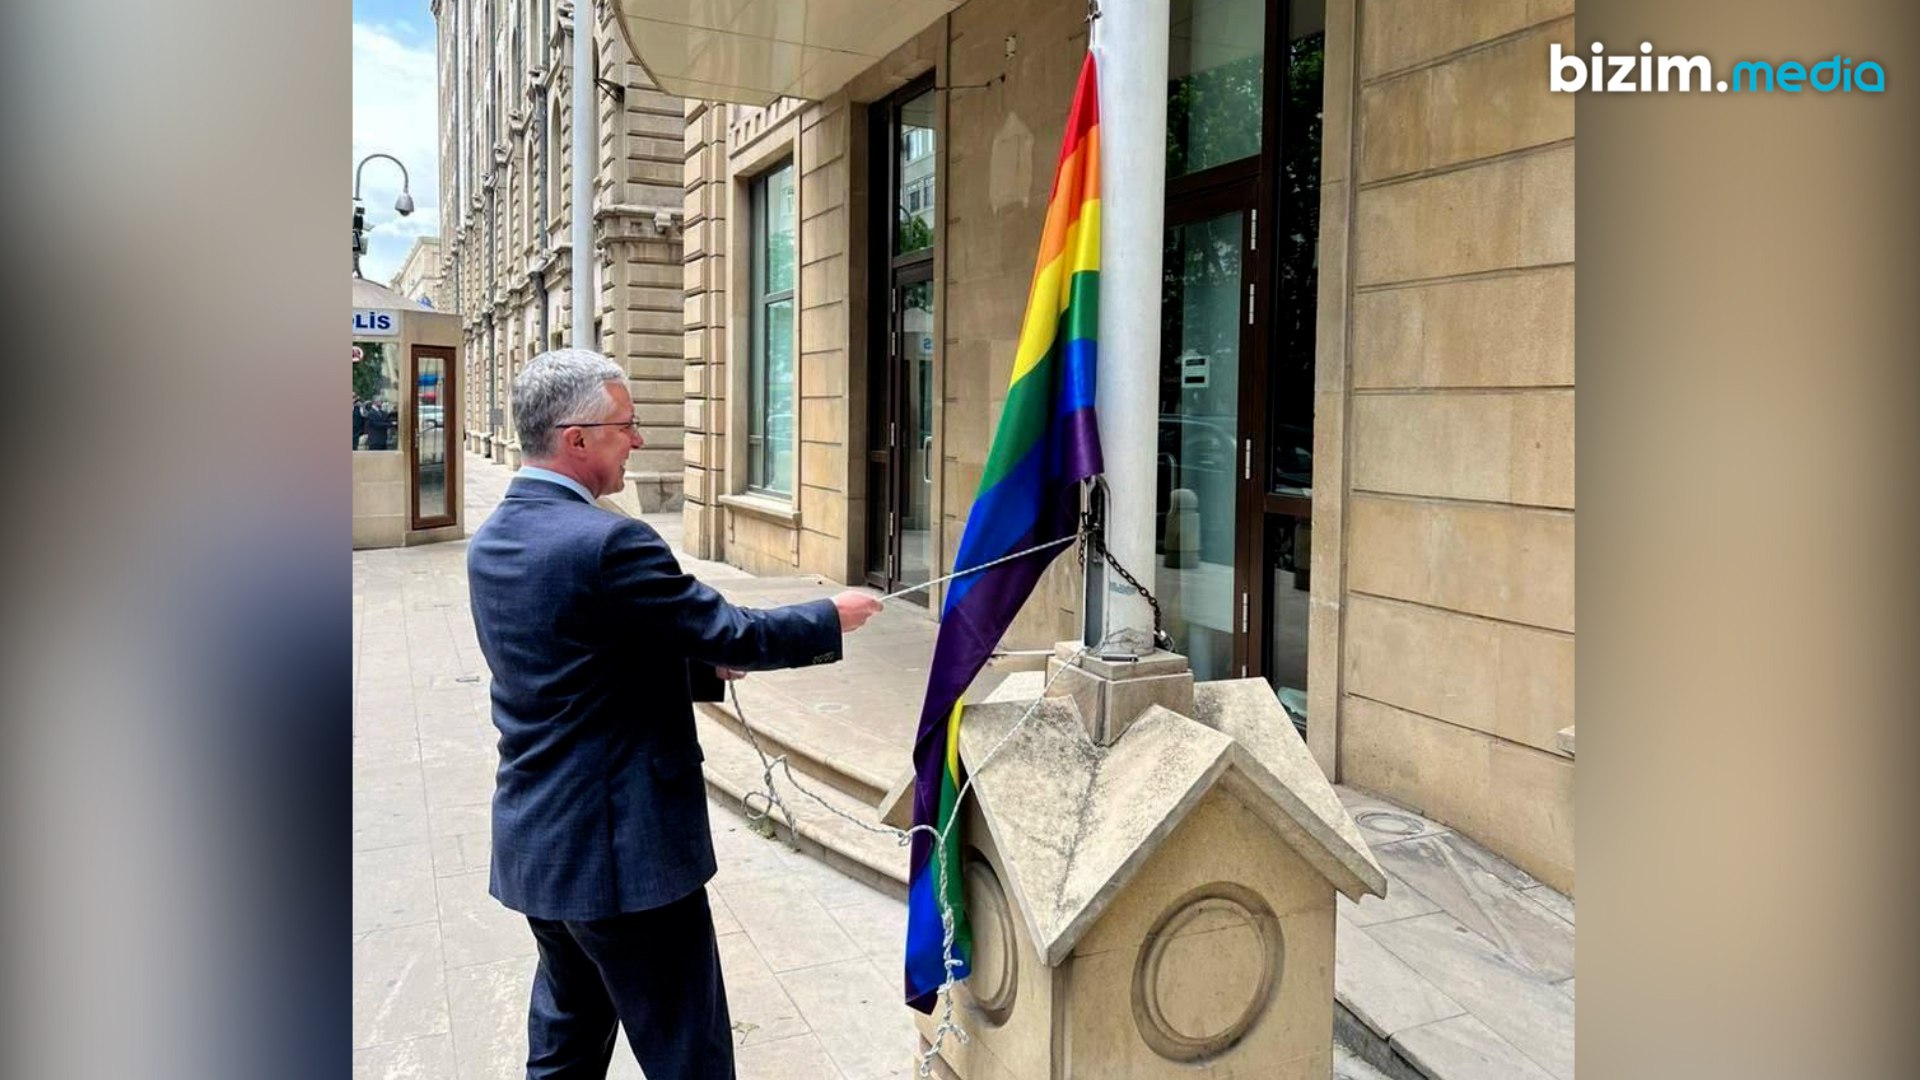 Bakının mərkəzindəki LGBT bayrağını kim dalğalandırır? – AÇIQLAMA 